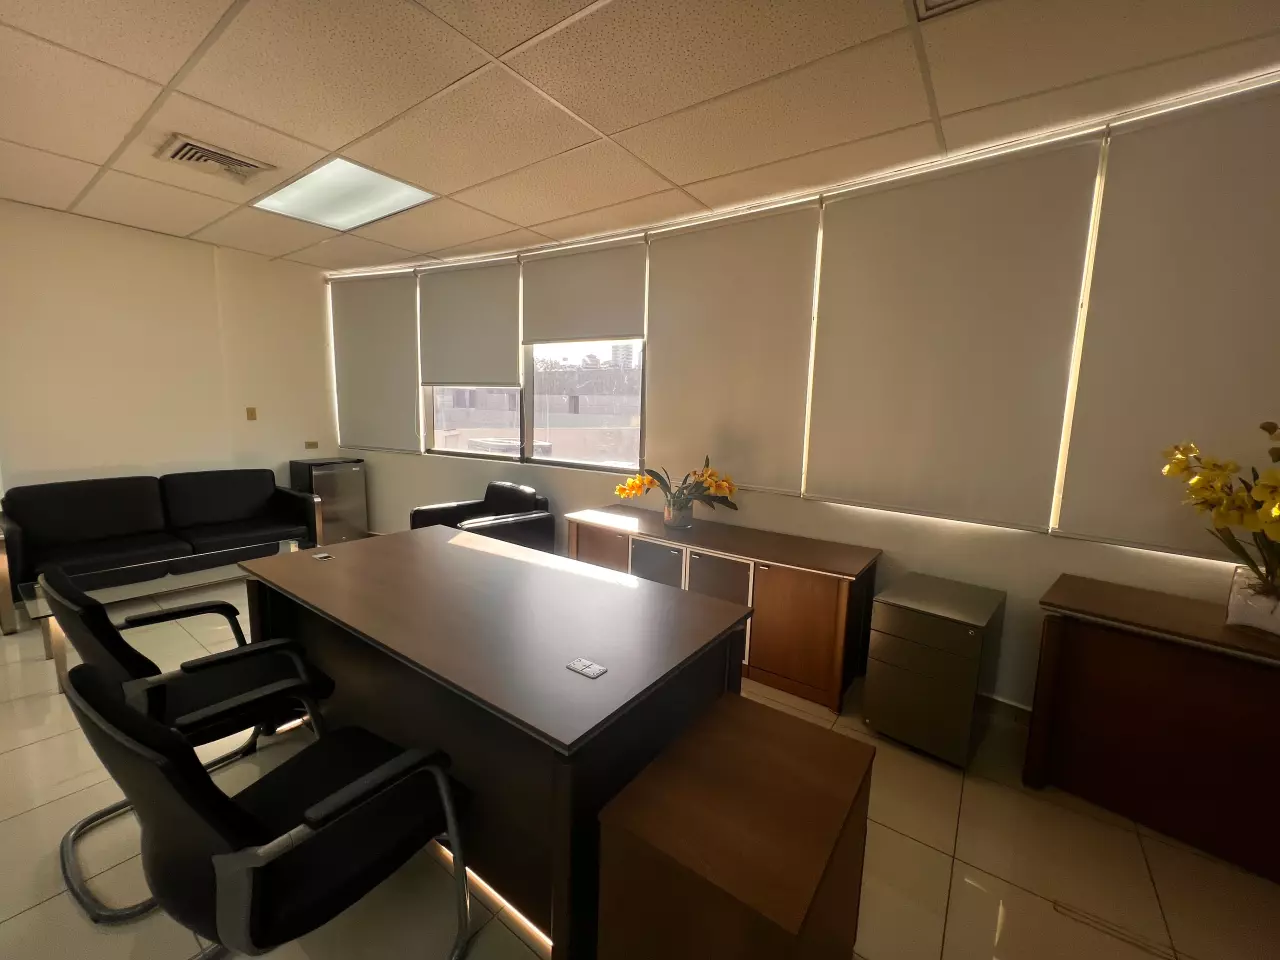 Área de la oficina en Metrópolis, con paredes blancas, piso de porcelanato y techo de tabla yeso con dos paneles led que iluminan la oficina.